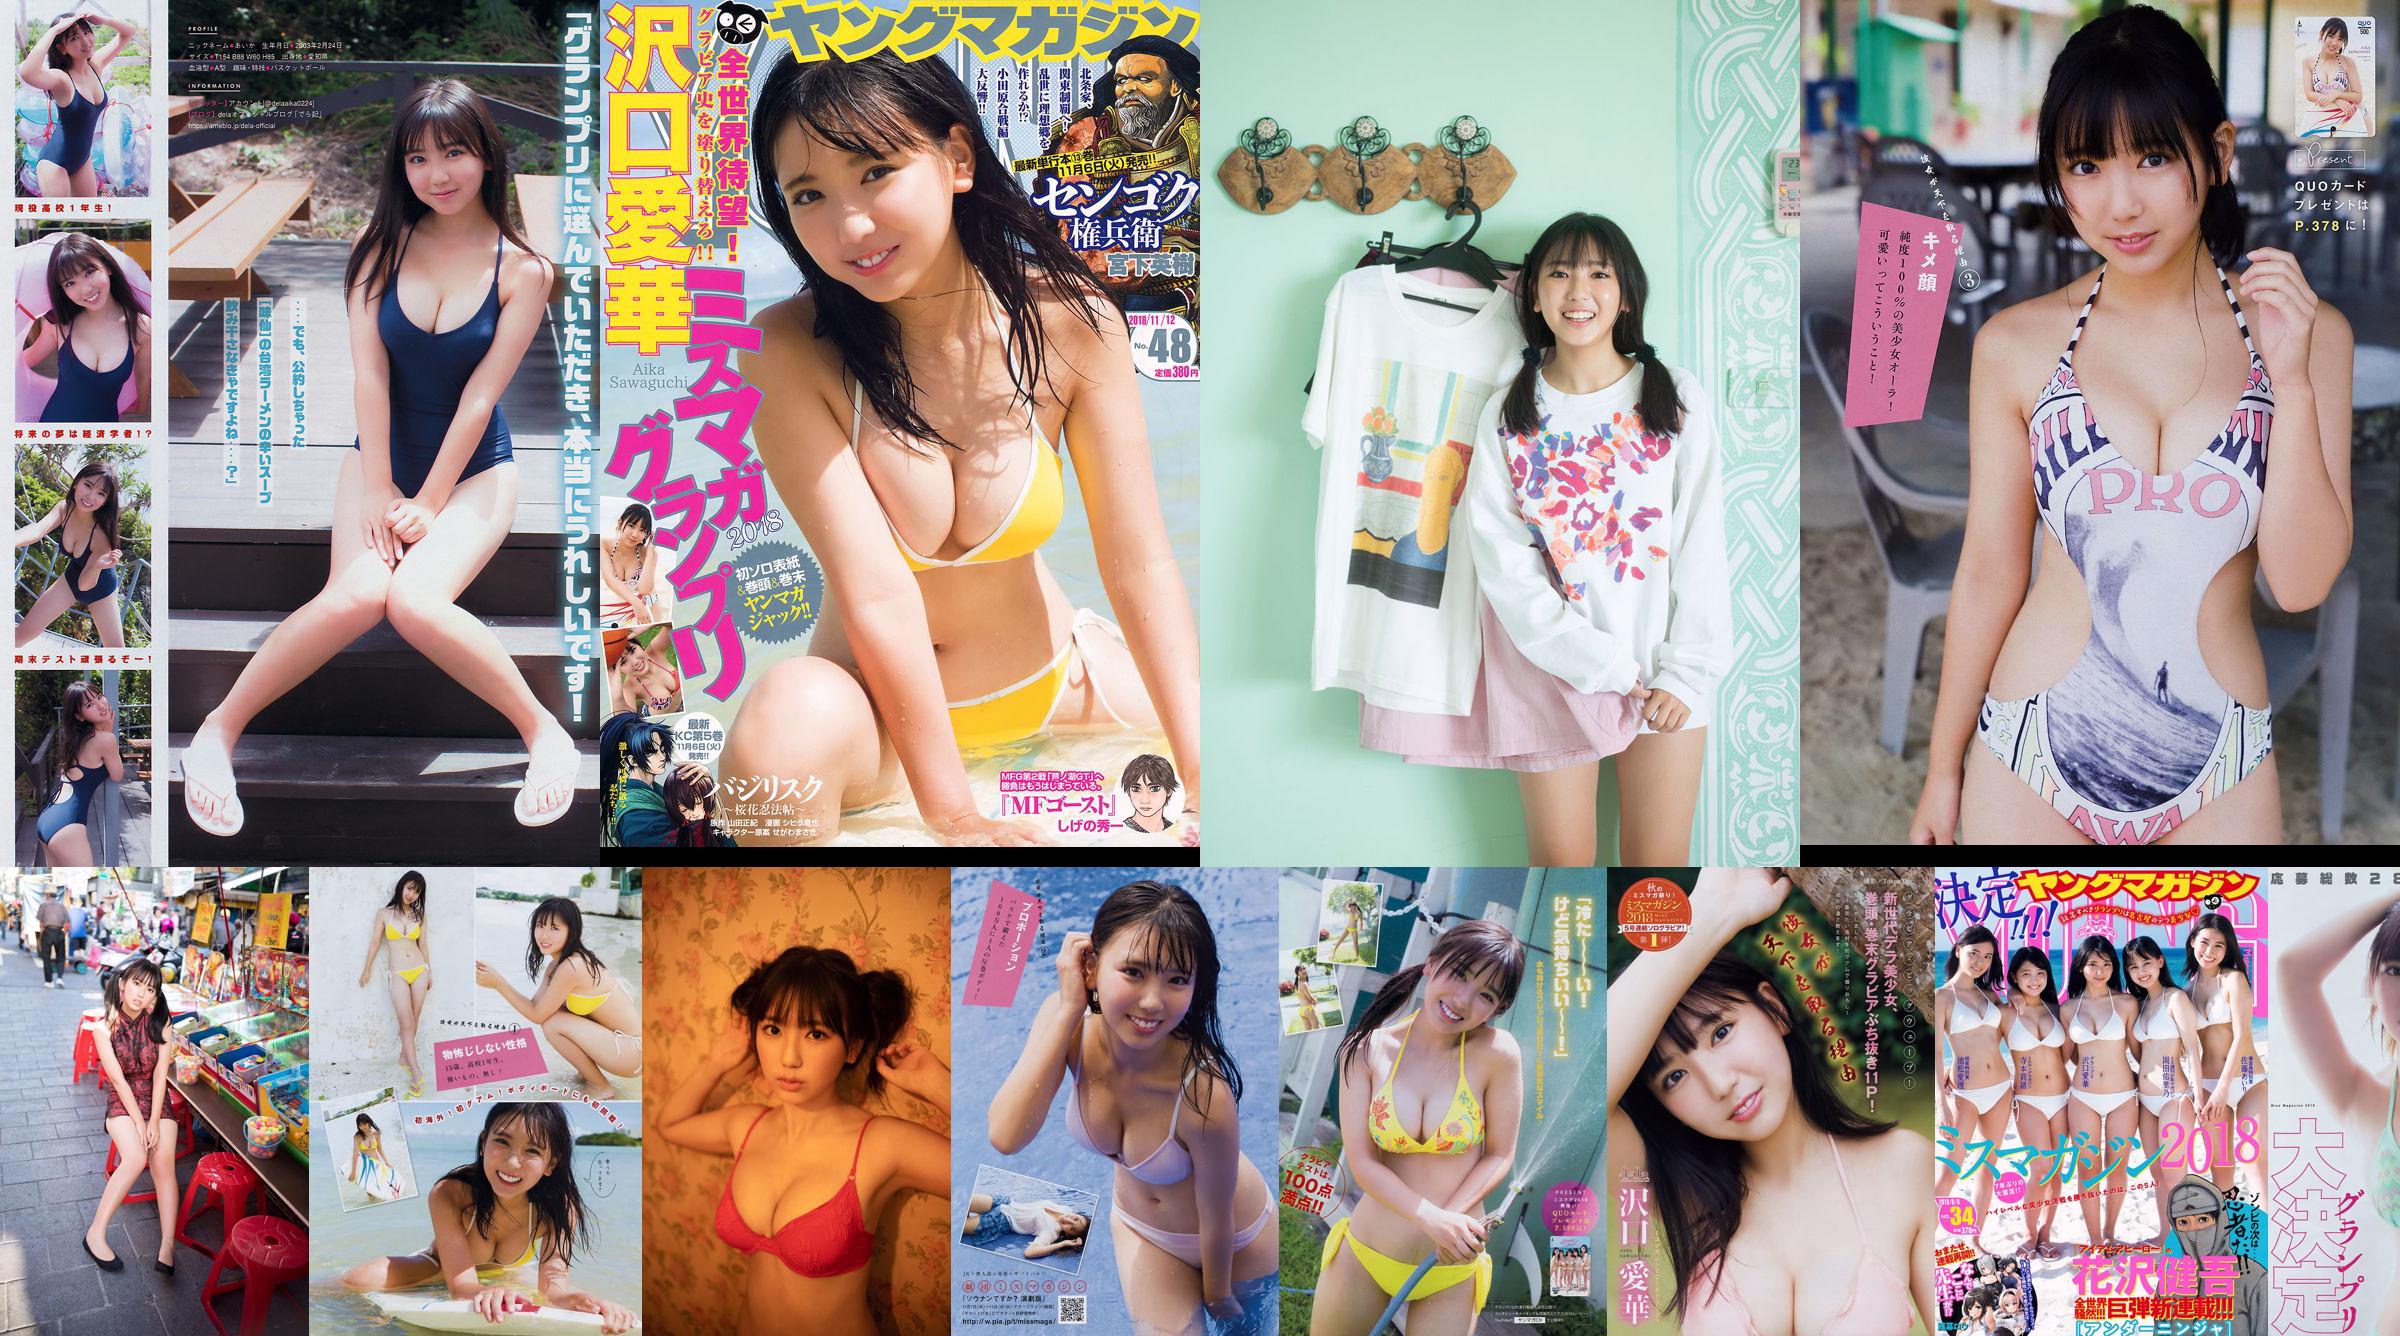 [Young Magazine] Aika Sawaguchi Rio Teramoto Airi Ikematsu Yurino Okada Airi Sato 2018 No.34 Photograph No.6a73db Page 3